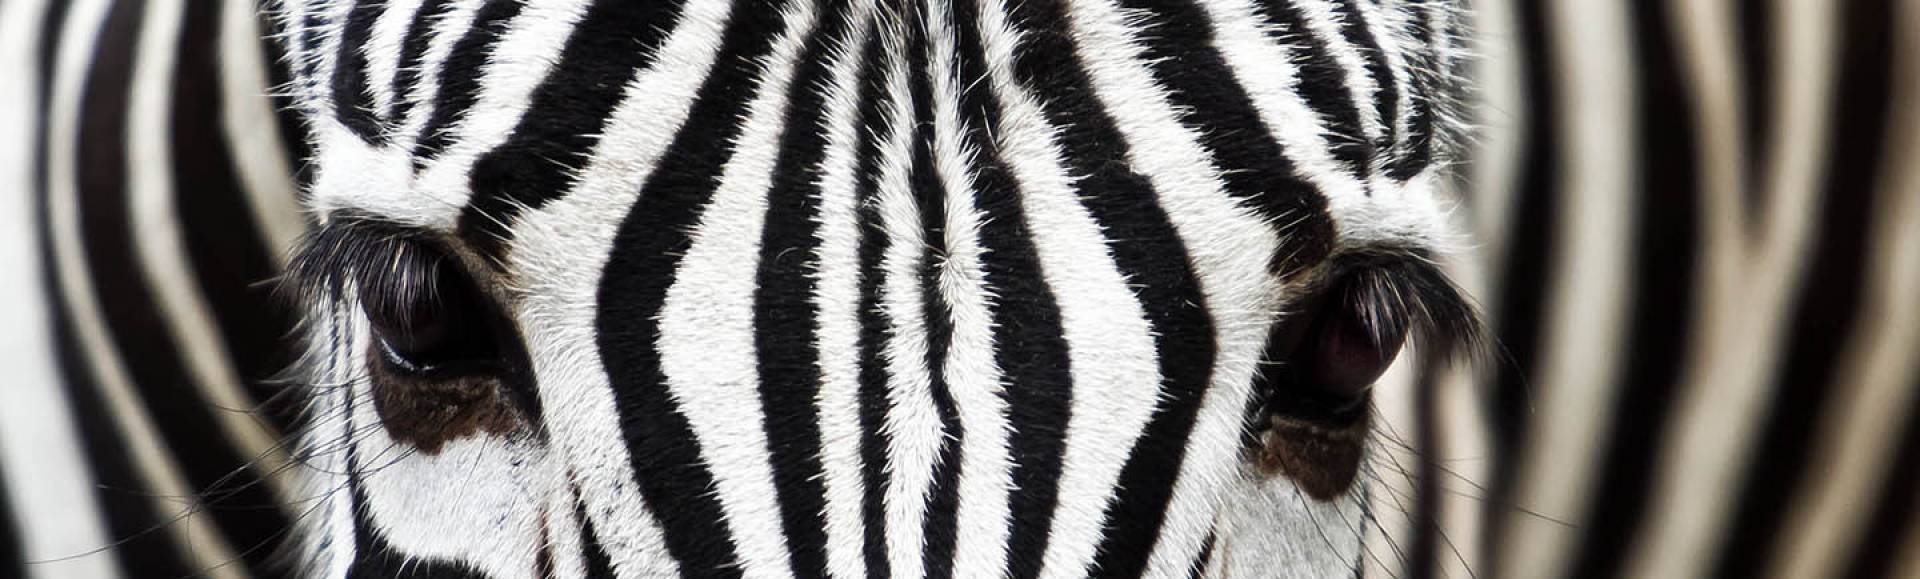 Inspiration illusion deco zebre